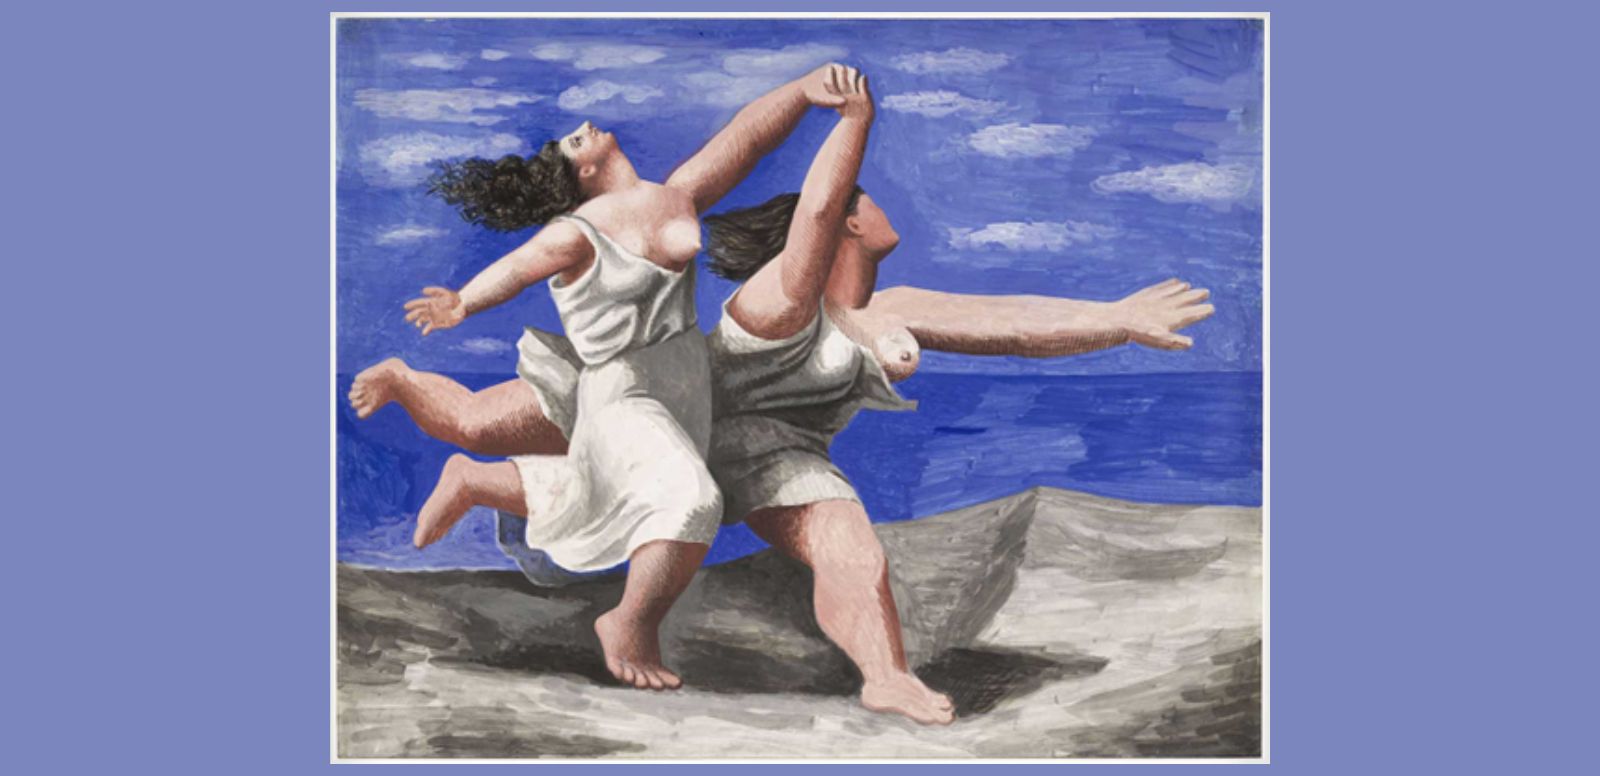 Pablo Picasso, “Dos mujeres corriendo por la playa”, 1922